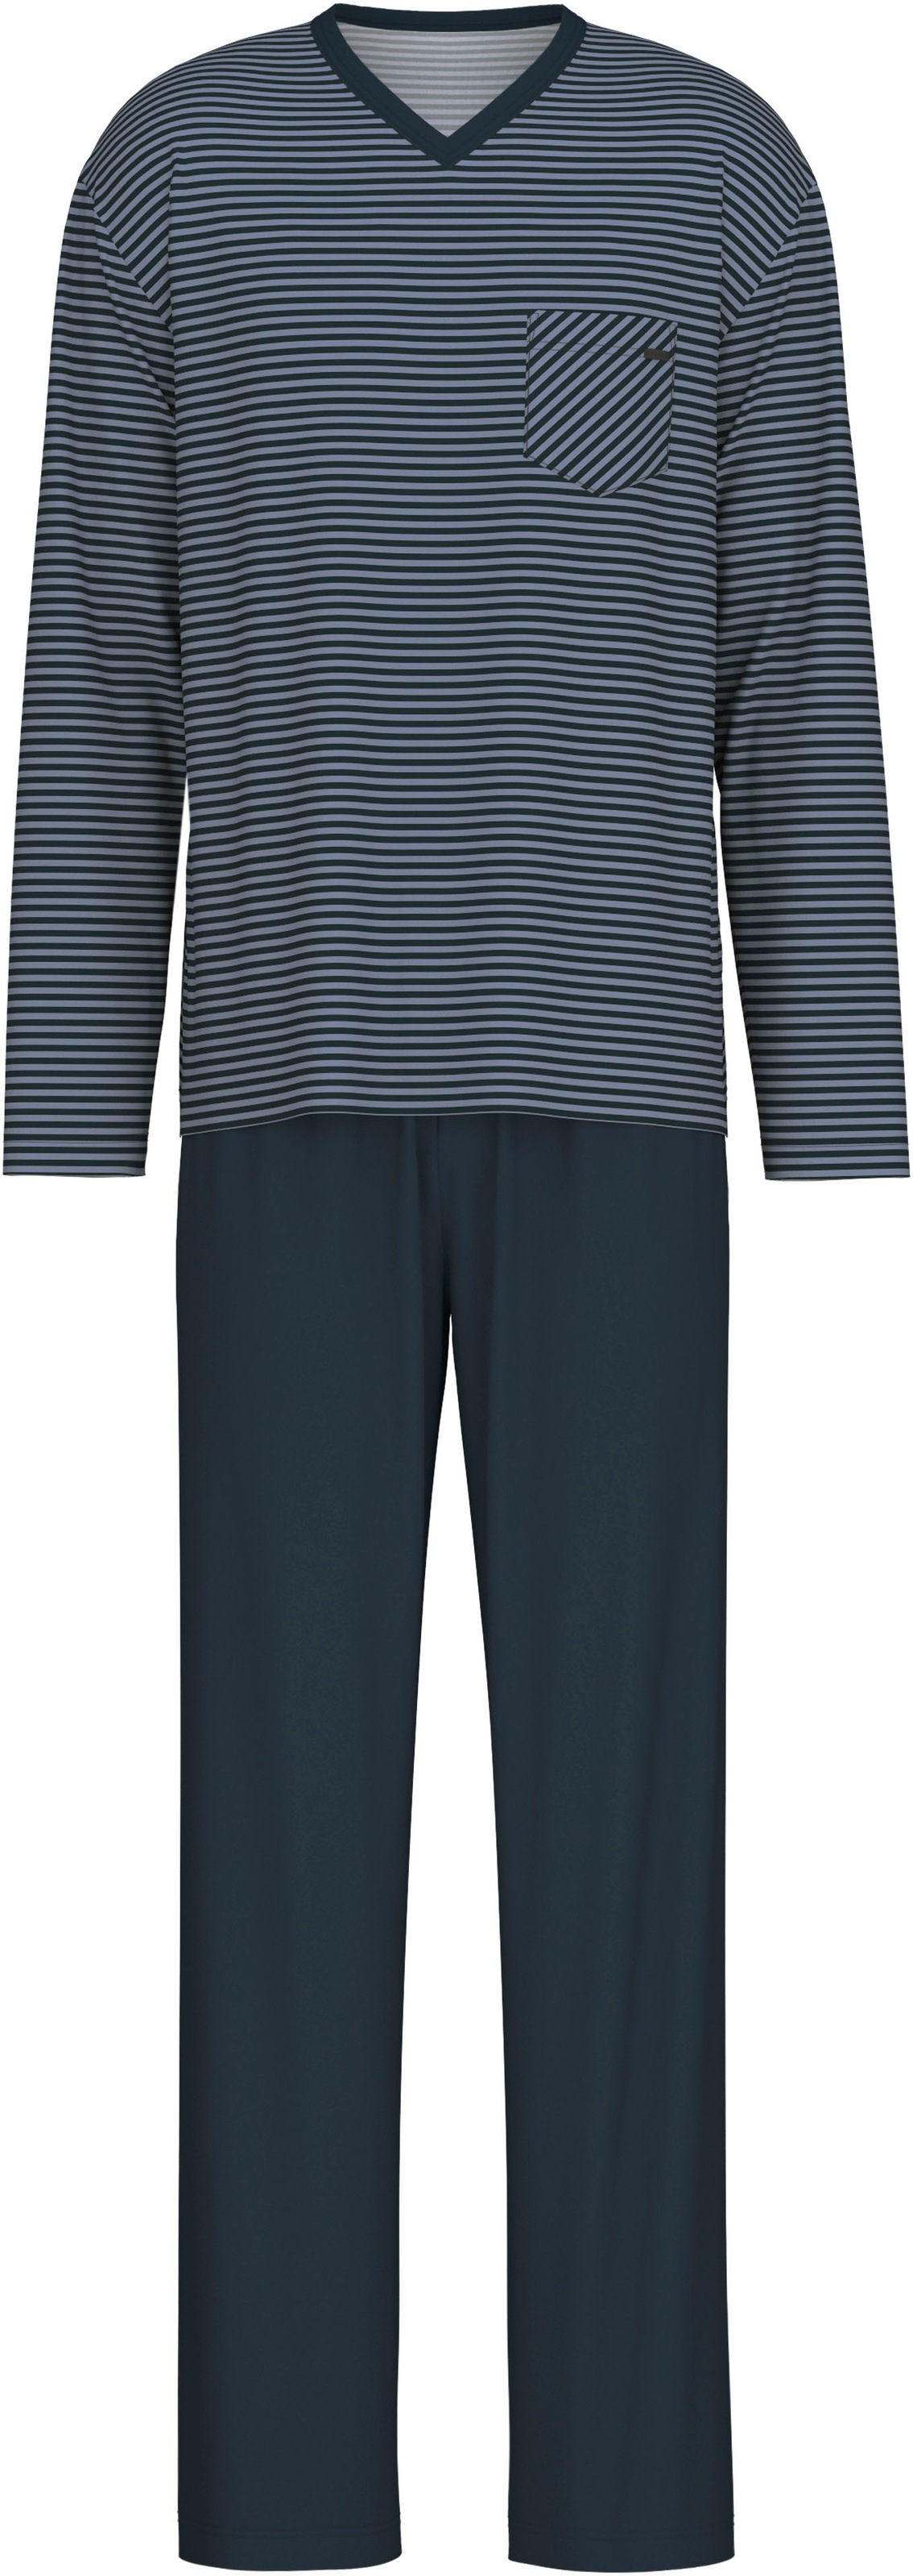 CALIDA Pyjama »Relax Streamline«, mit aufgesetzter Brusttasche